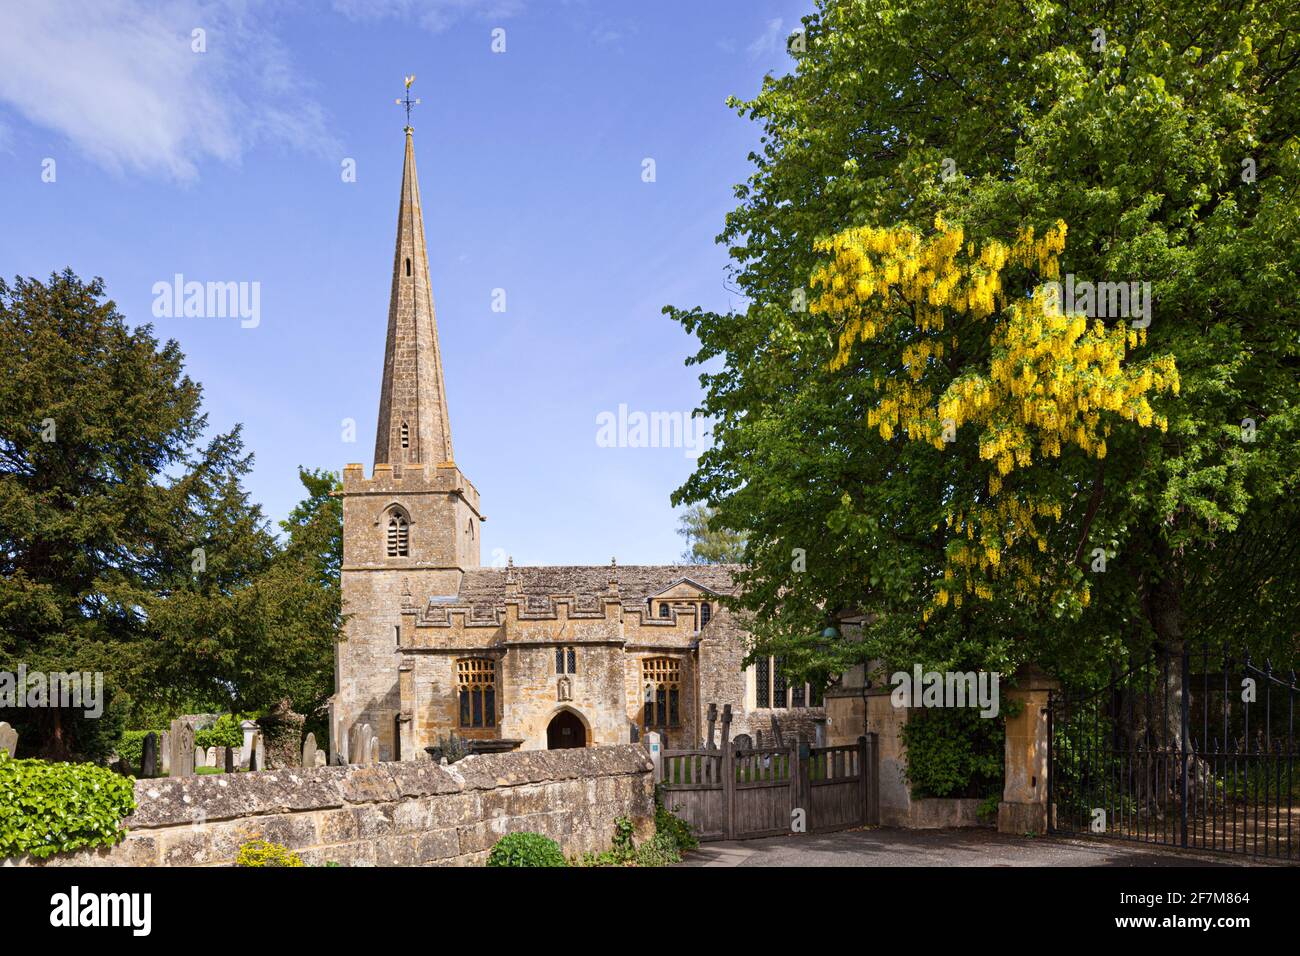 Ein Laburnum-Baum in voller Blüte am Eingangstor zur Kirche St. Michael und All Angels im Dorf Stanton, Gloucestershire, Großbritannien Stockfoto